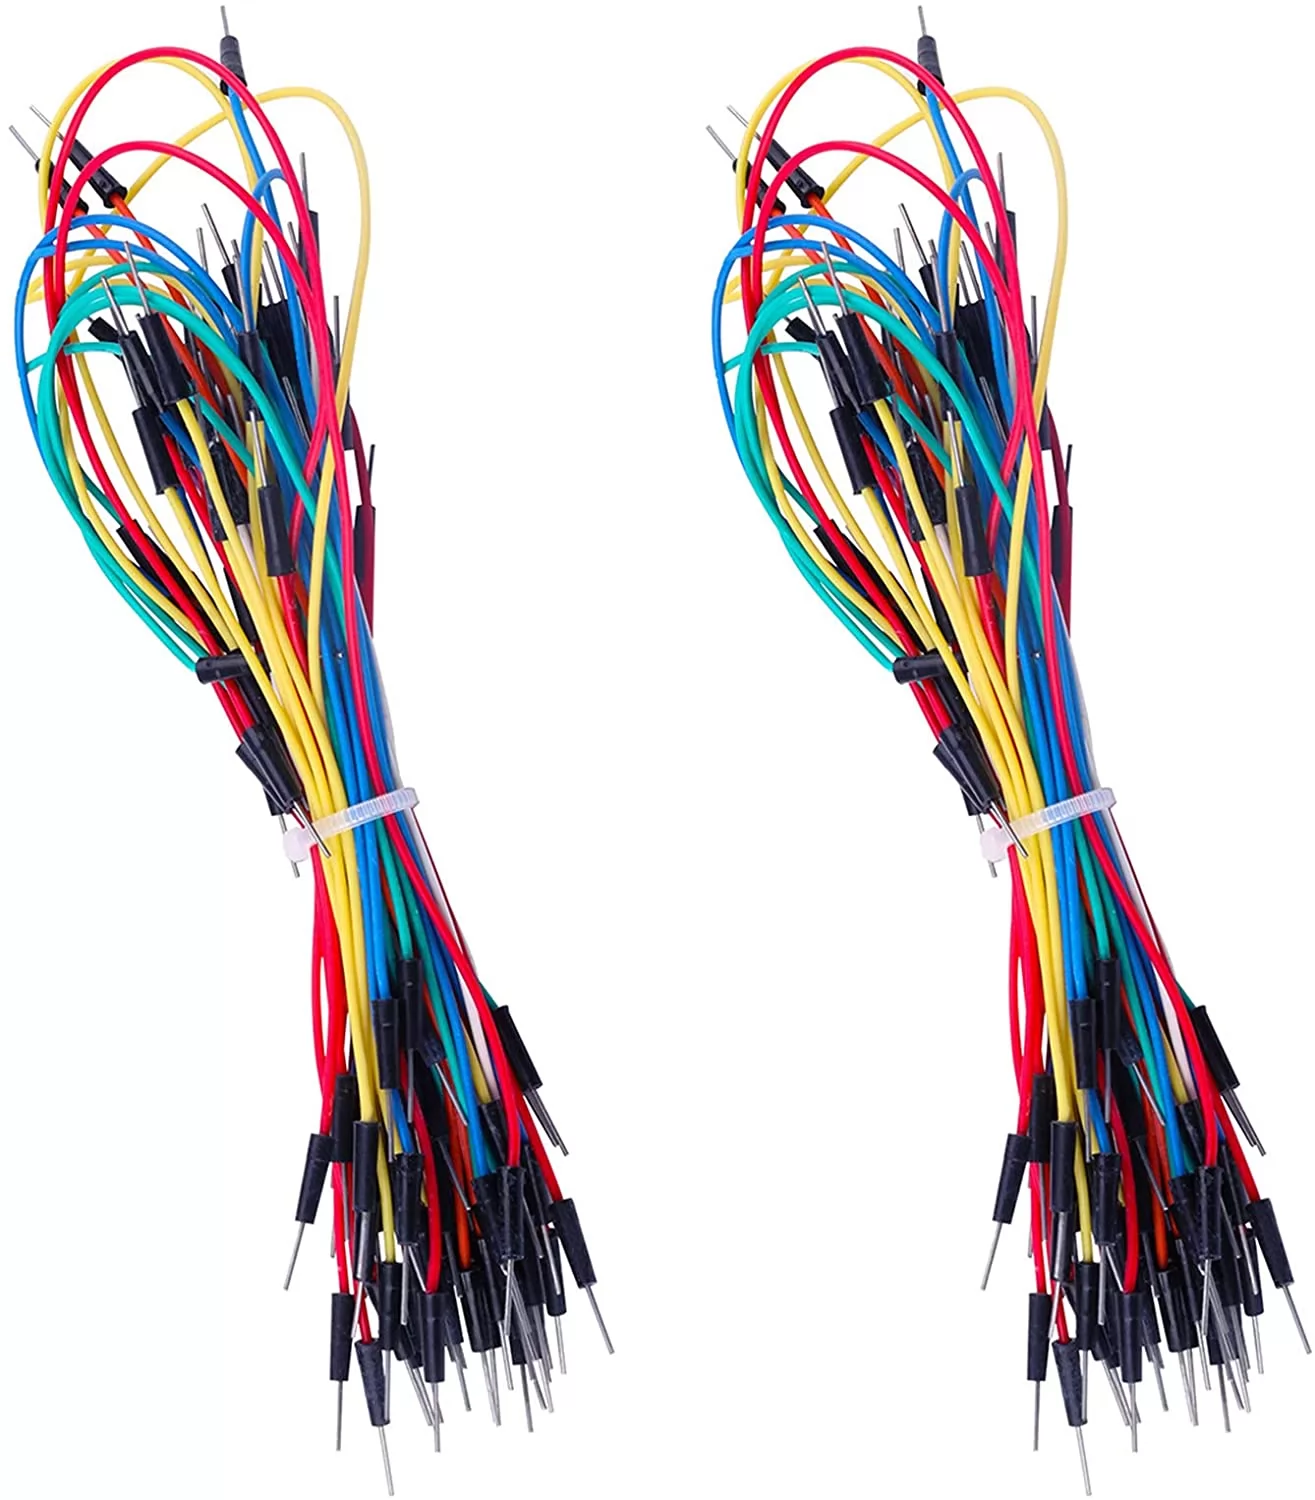 130pcs Solderless Flexible Breadboard Jumper Wires Male to Male for Arduino Raspberry Pi Breadboard